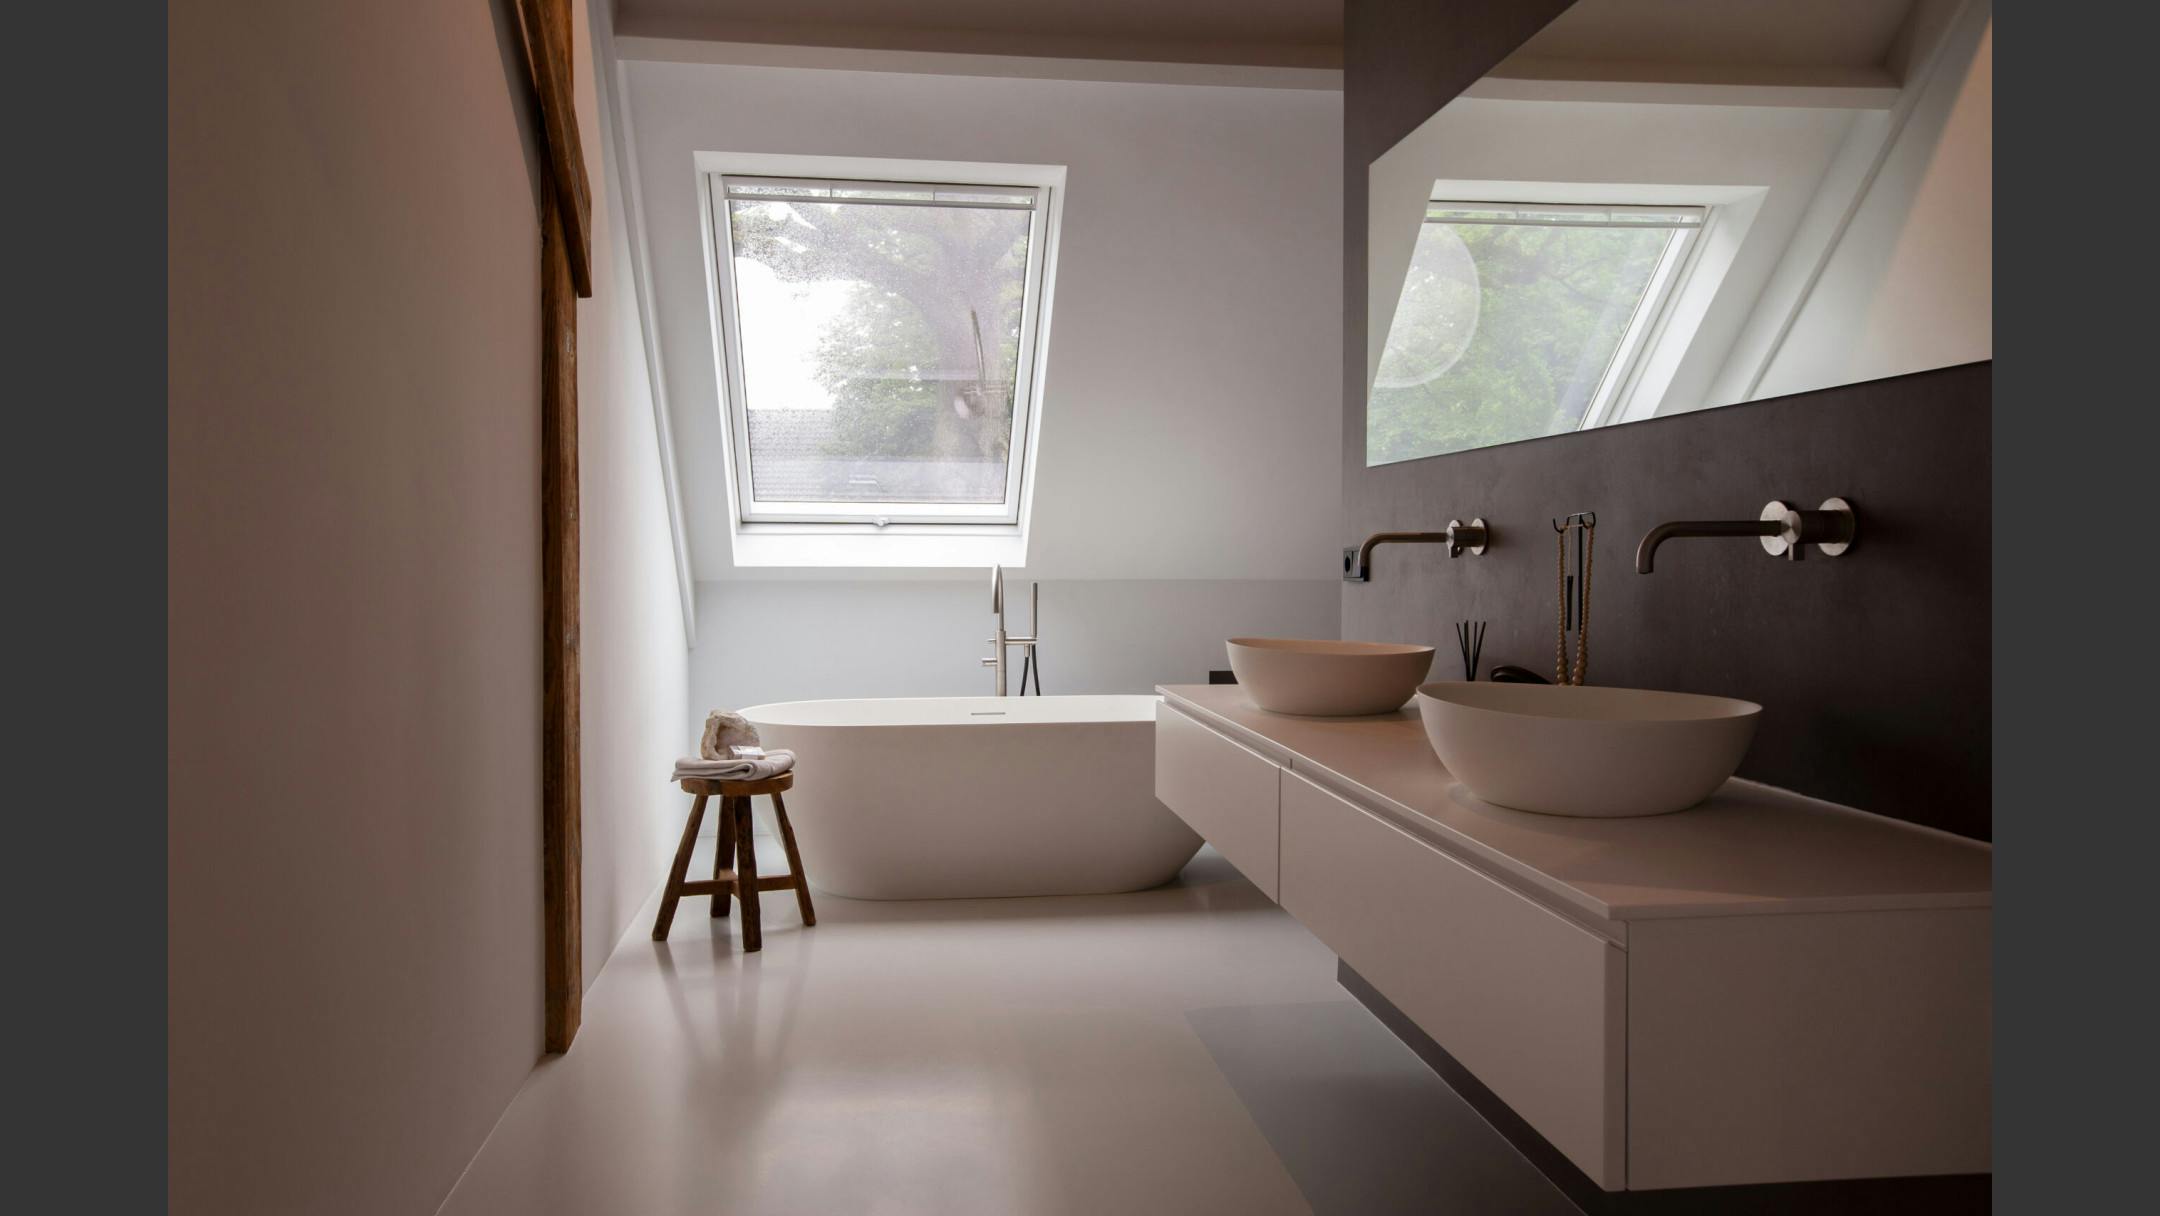 Een badkamer in Scandinavische stijl door het gebruik van witte kleuren en houten materialen.